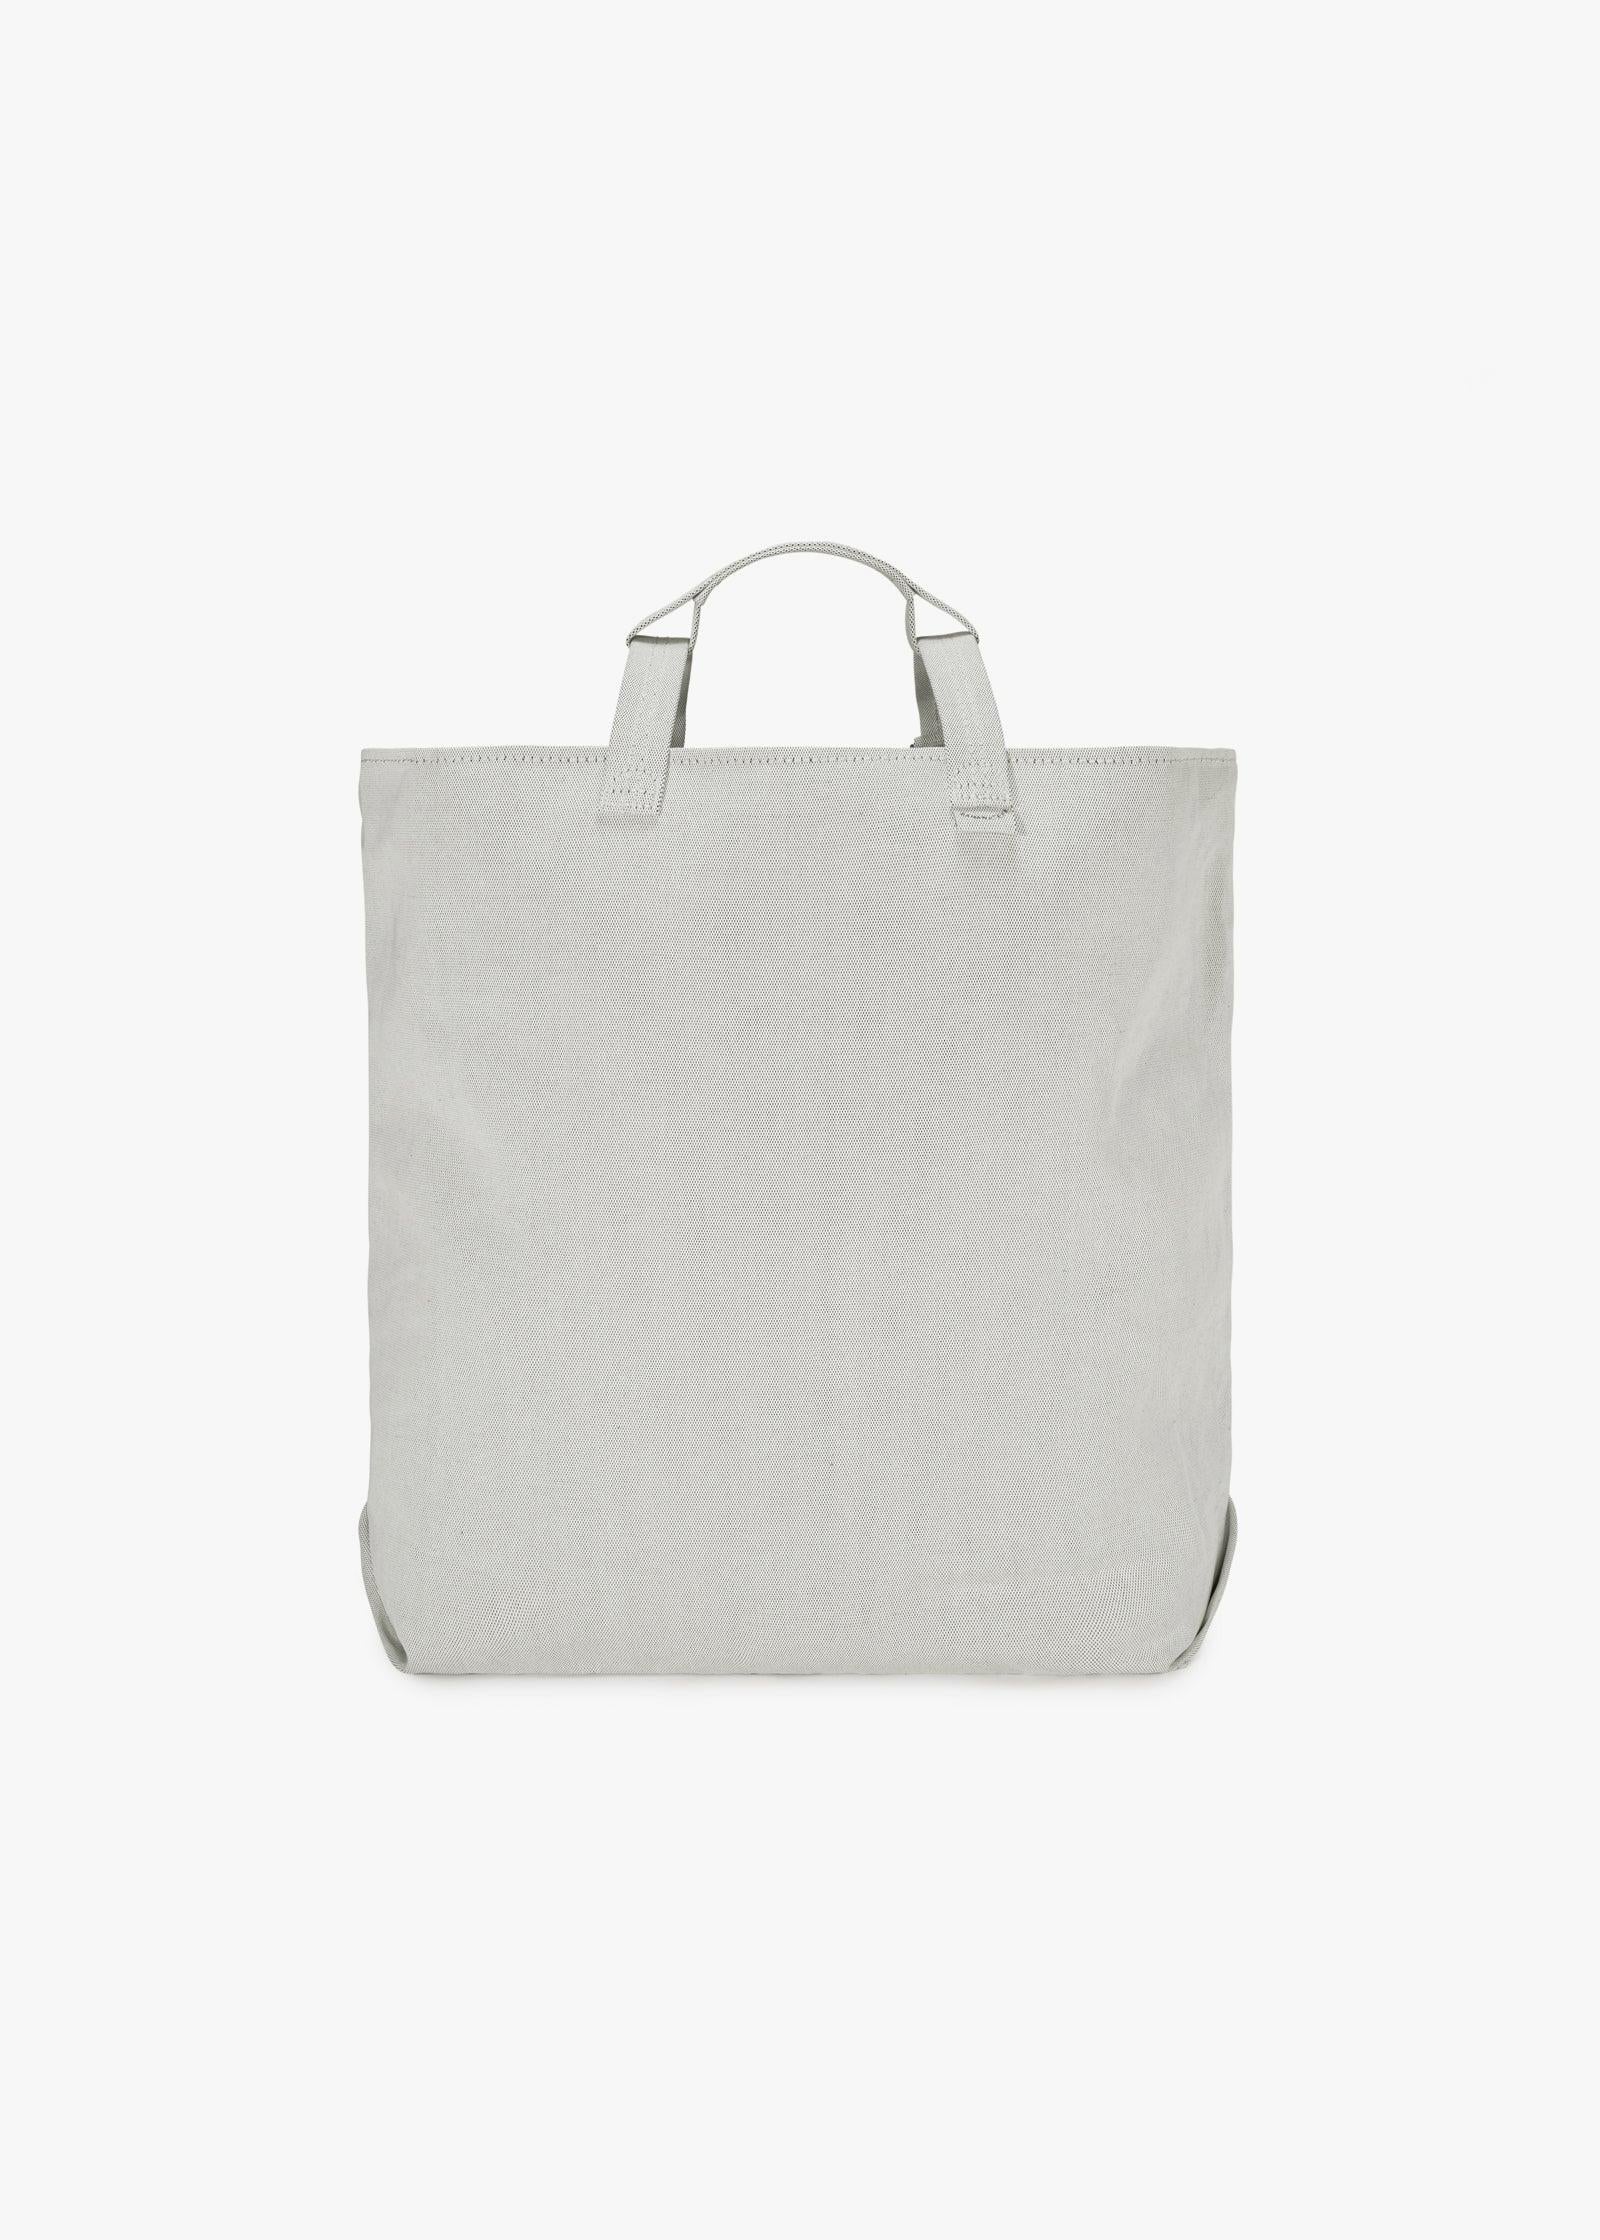 Bananatex Tote Bag Medium – Gravel / Raven